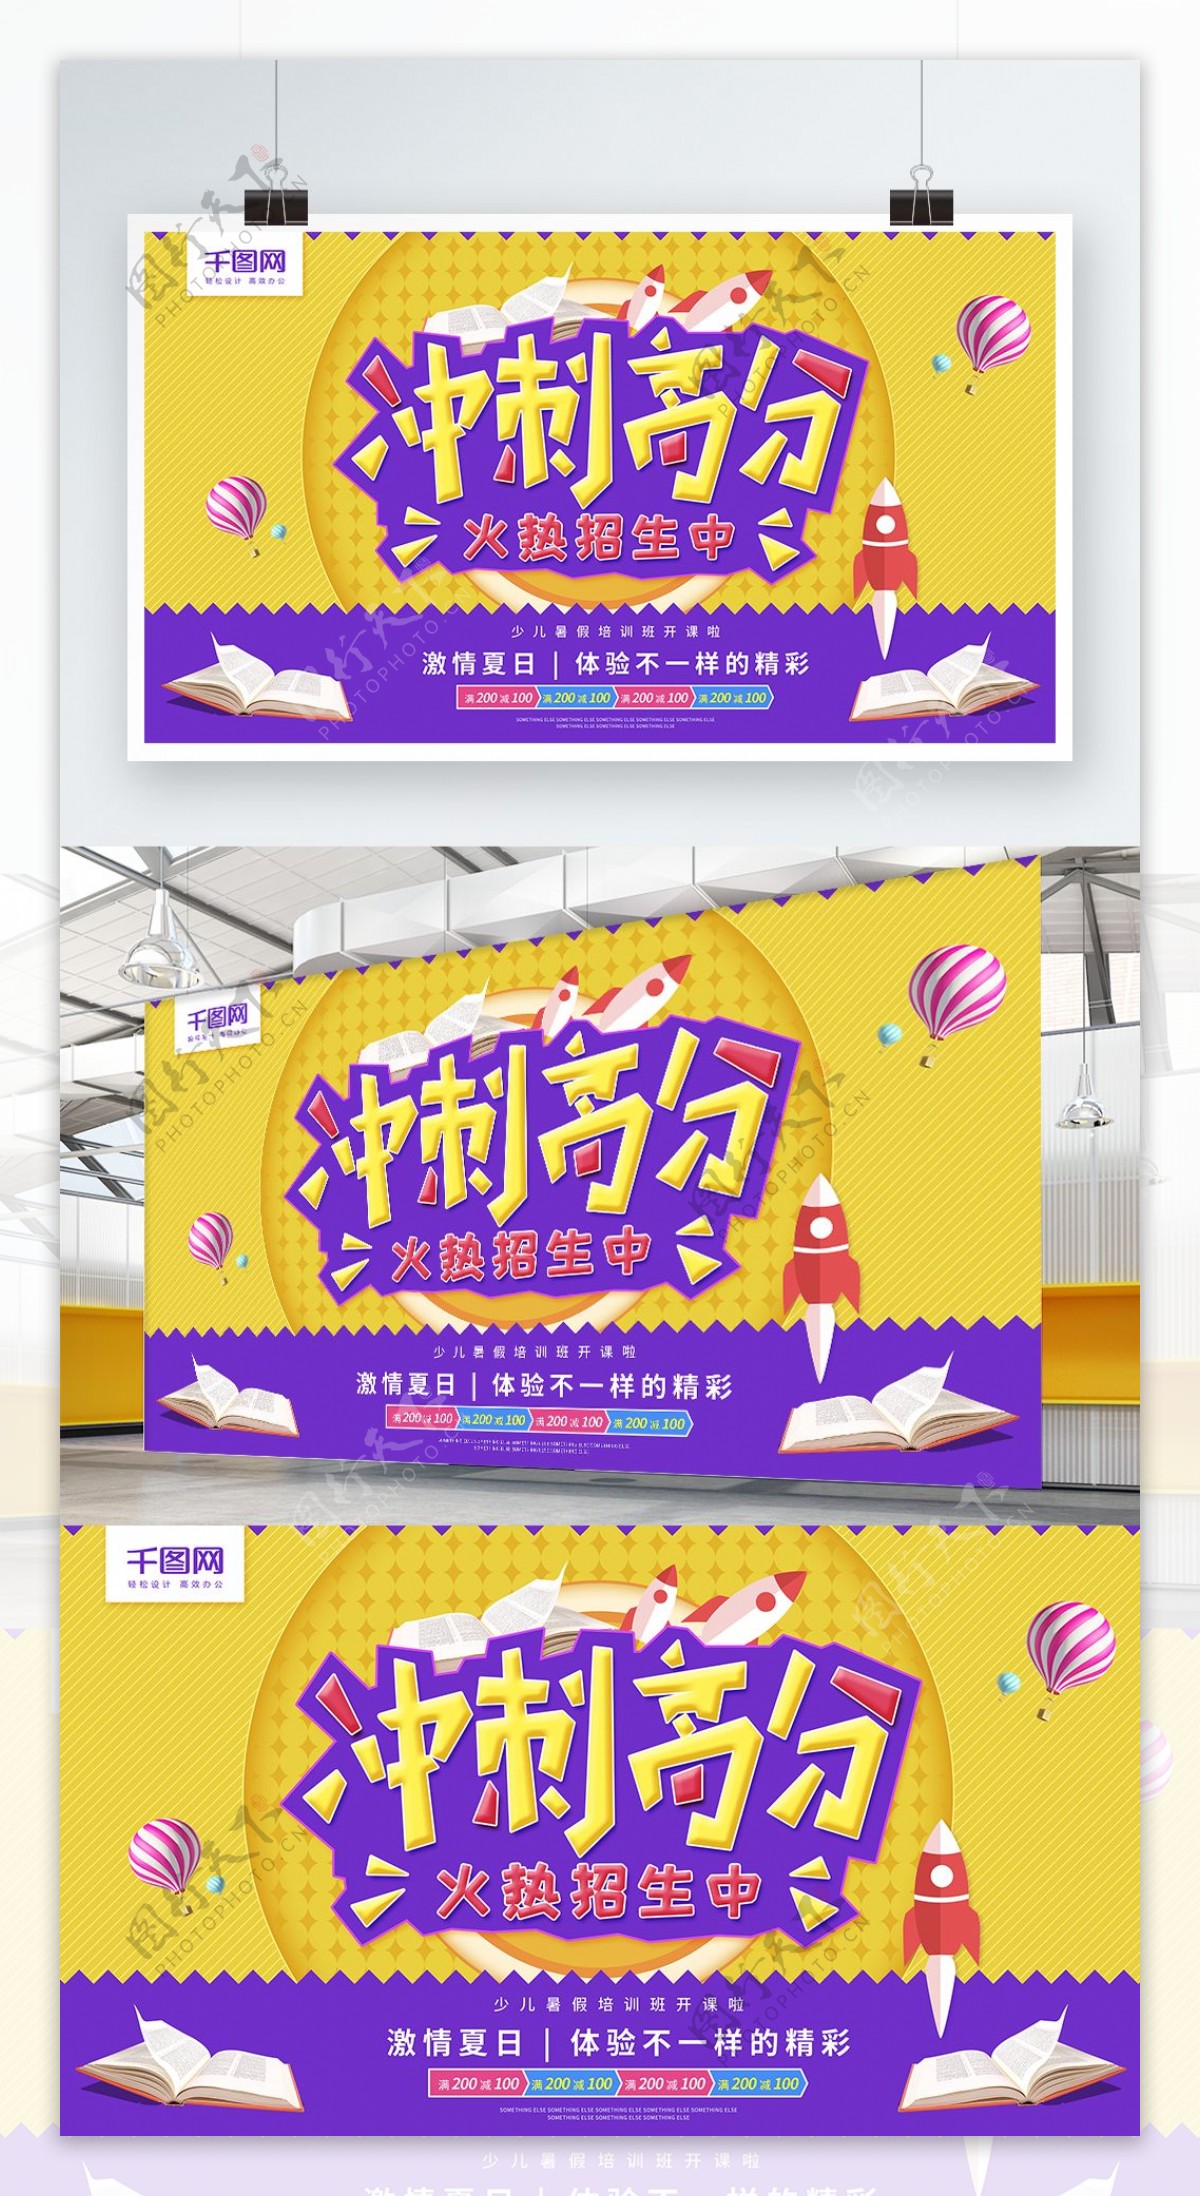 冲刺高分火热招生黄紫色简约教育商业海报